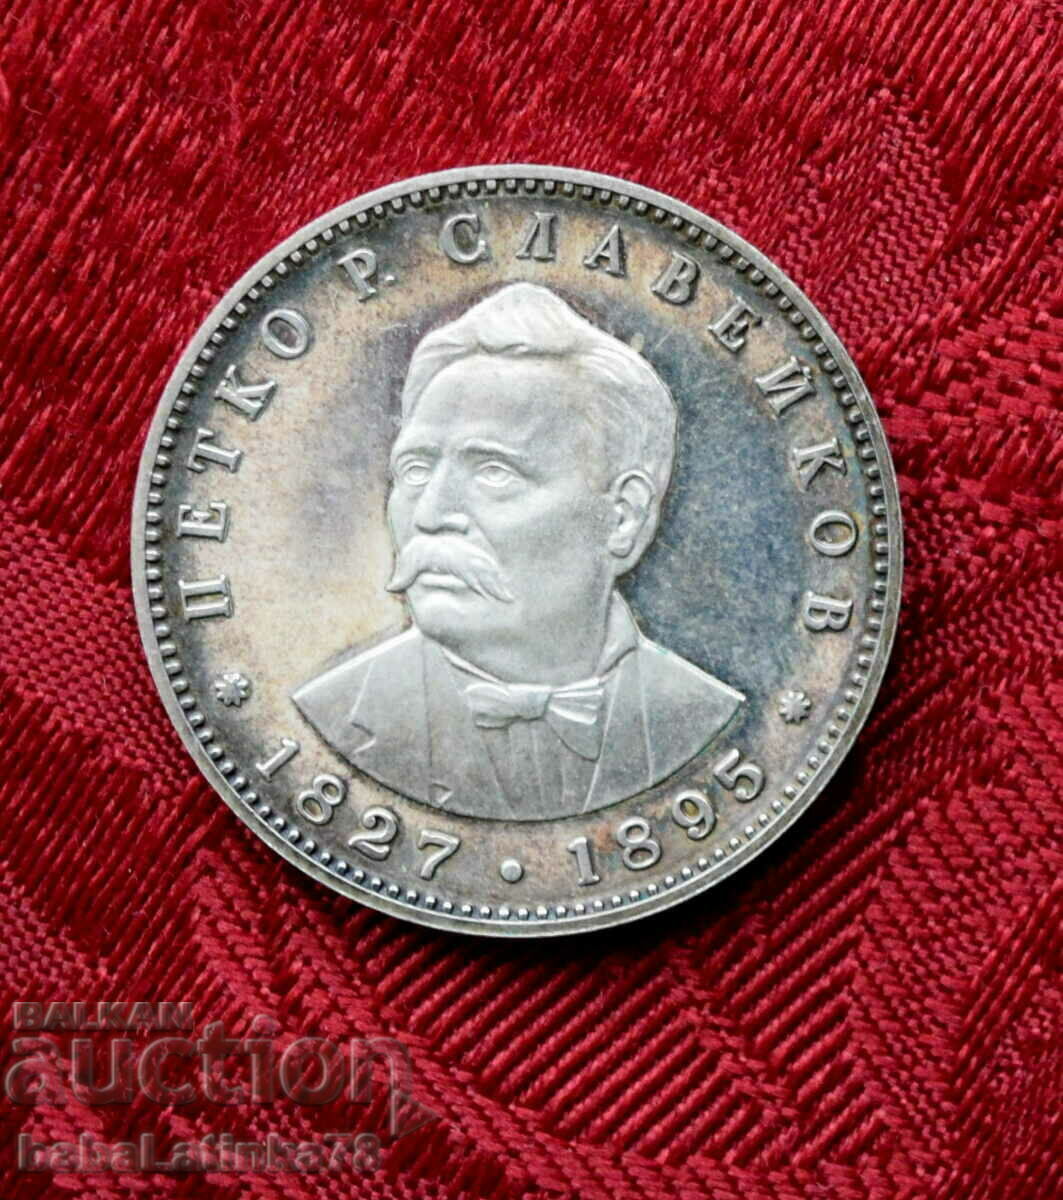 Κέρμα 5 λέβα. Πέτκο Σλαβέικοφ 1977